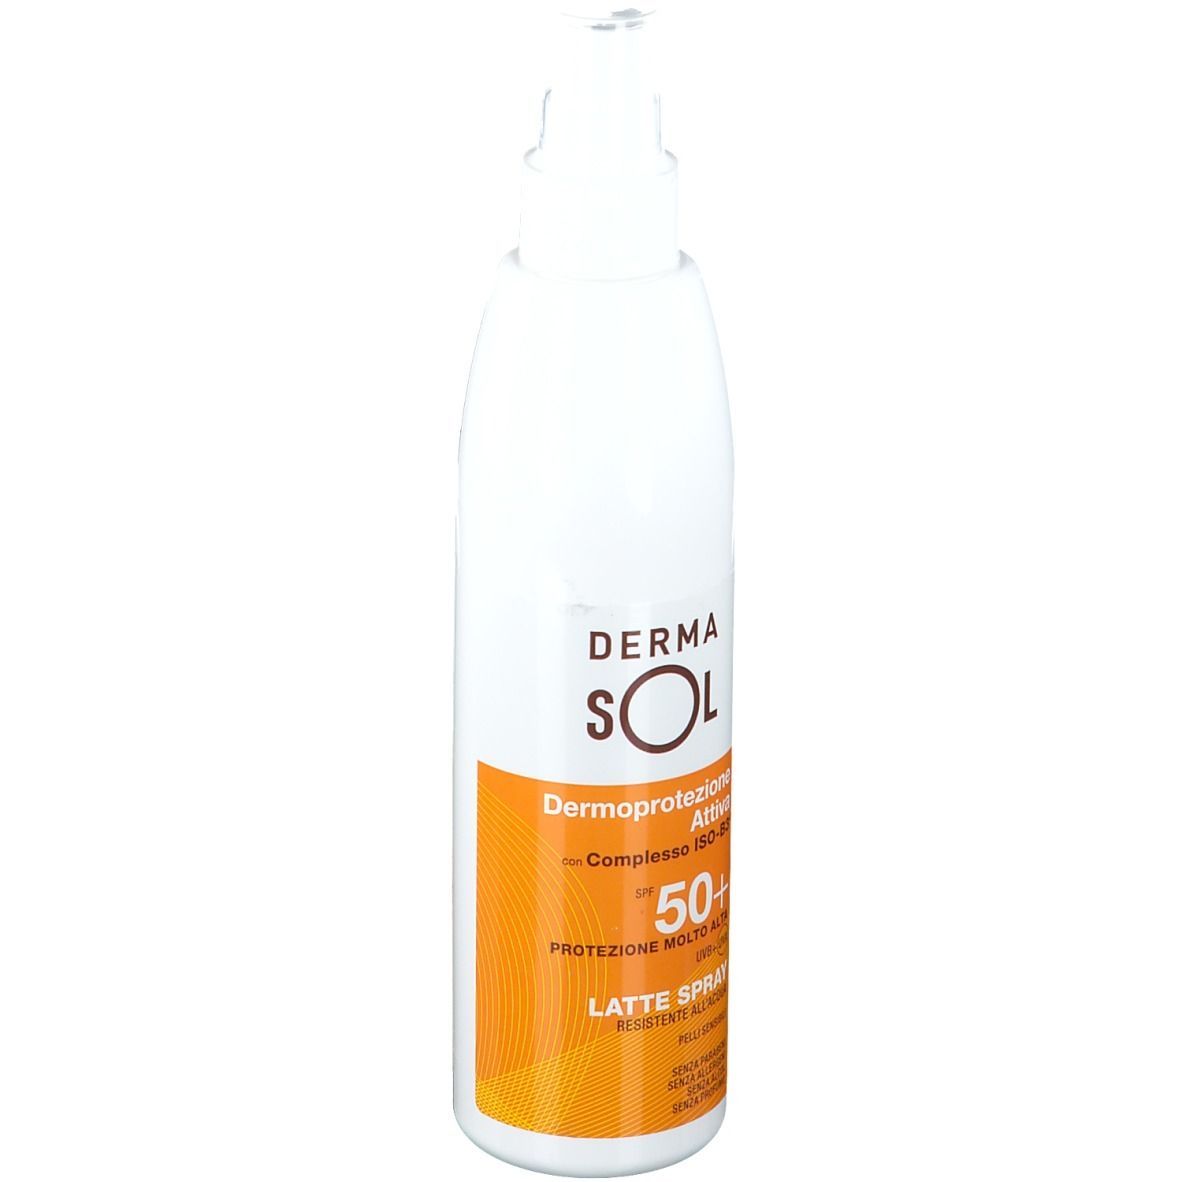 DERMASOL Spray Dermoprotezione Attiva SPF 50+